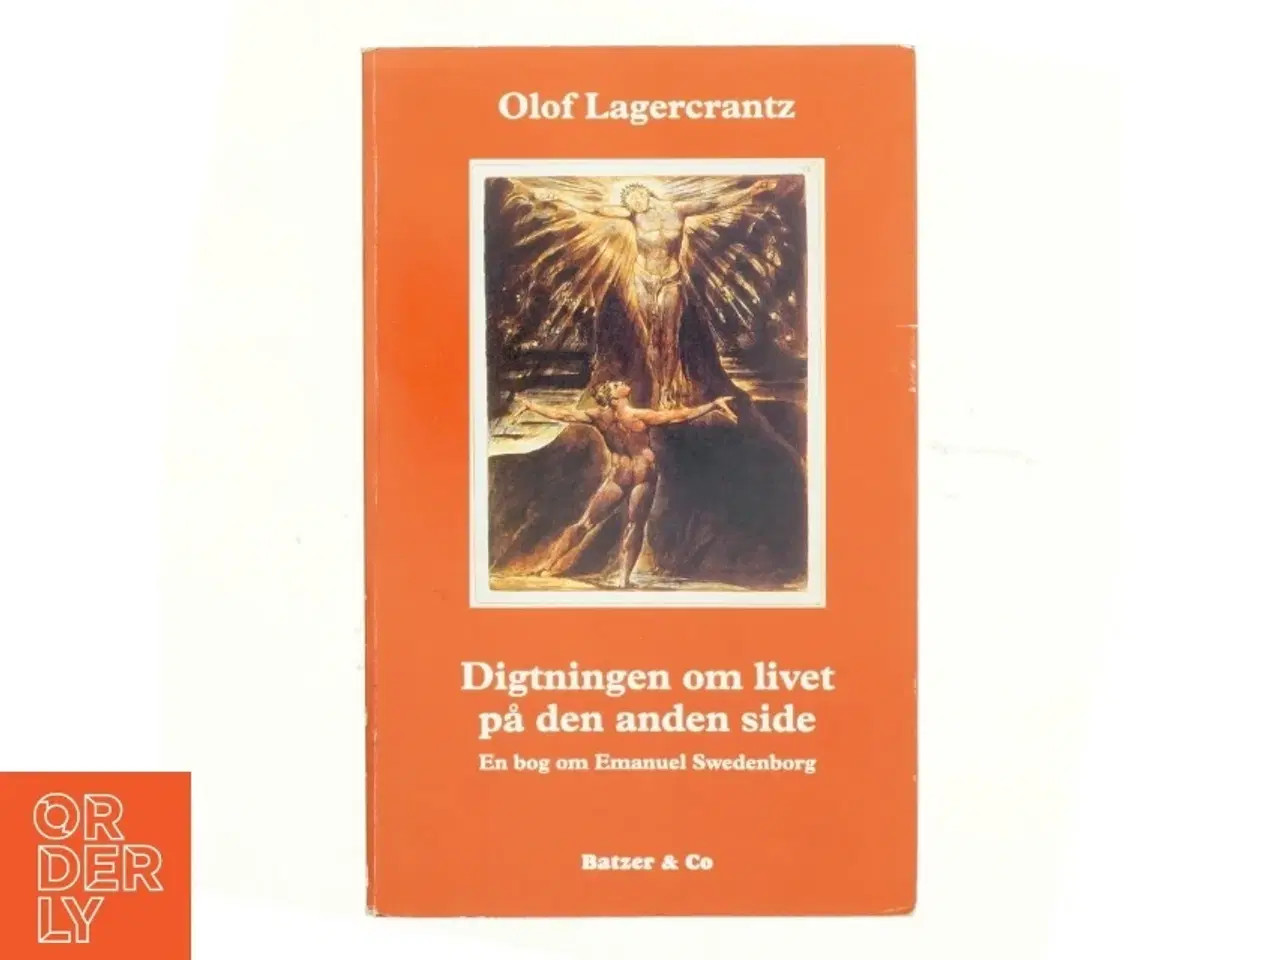 Billede 1 - Digtning om livet på den anden side af Olof Lagercrantz (bog)